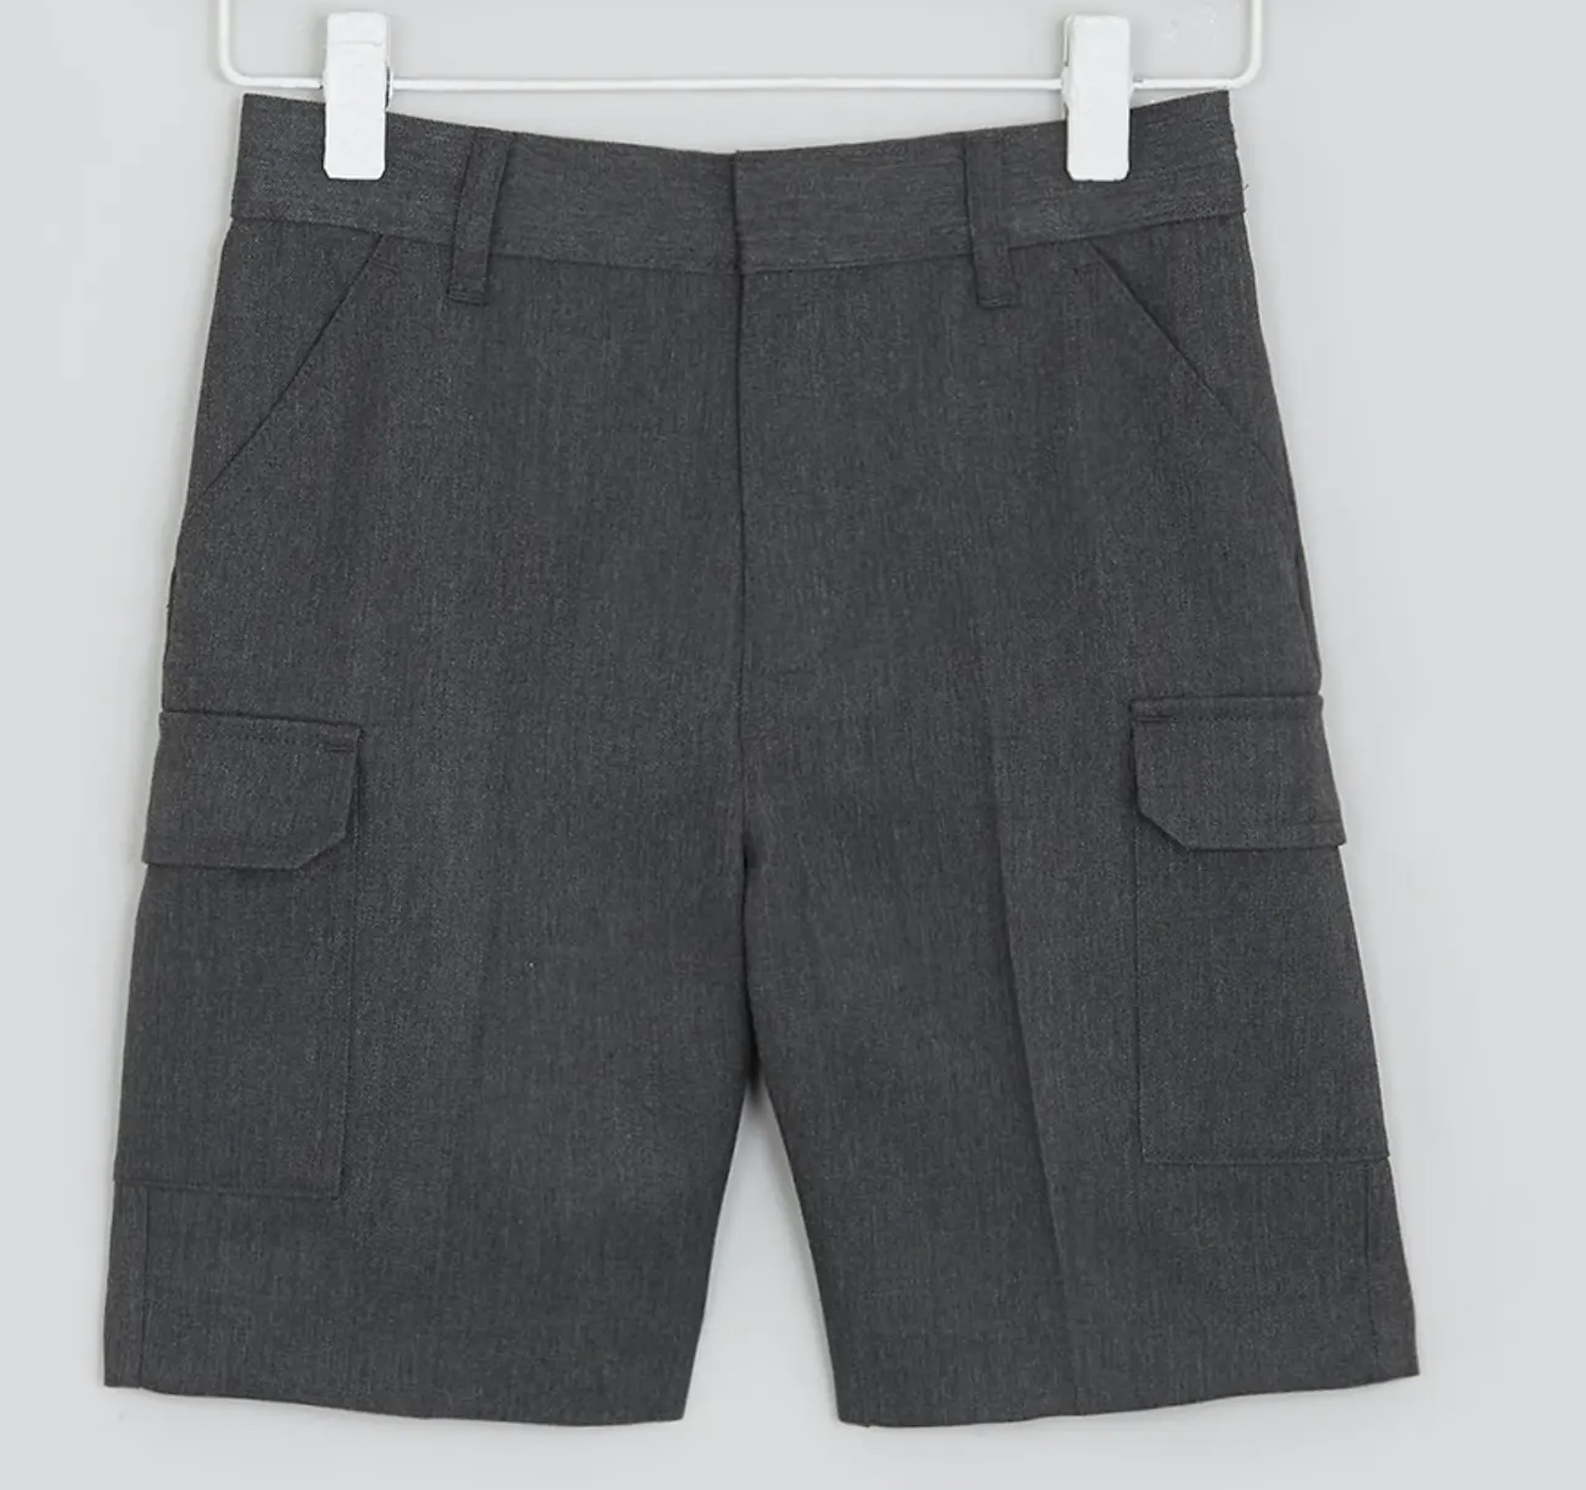 Boys' Dark Grey Cargo Shorts, Flat Front, Adjustable Waist, Four Pockets 8-9 Y